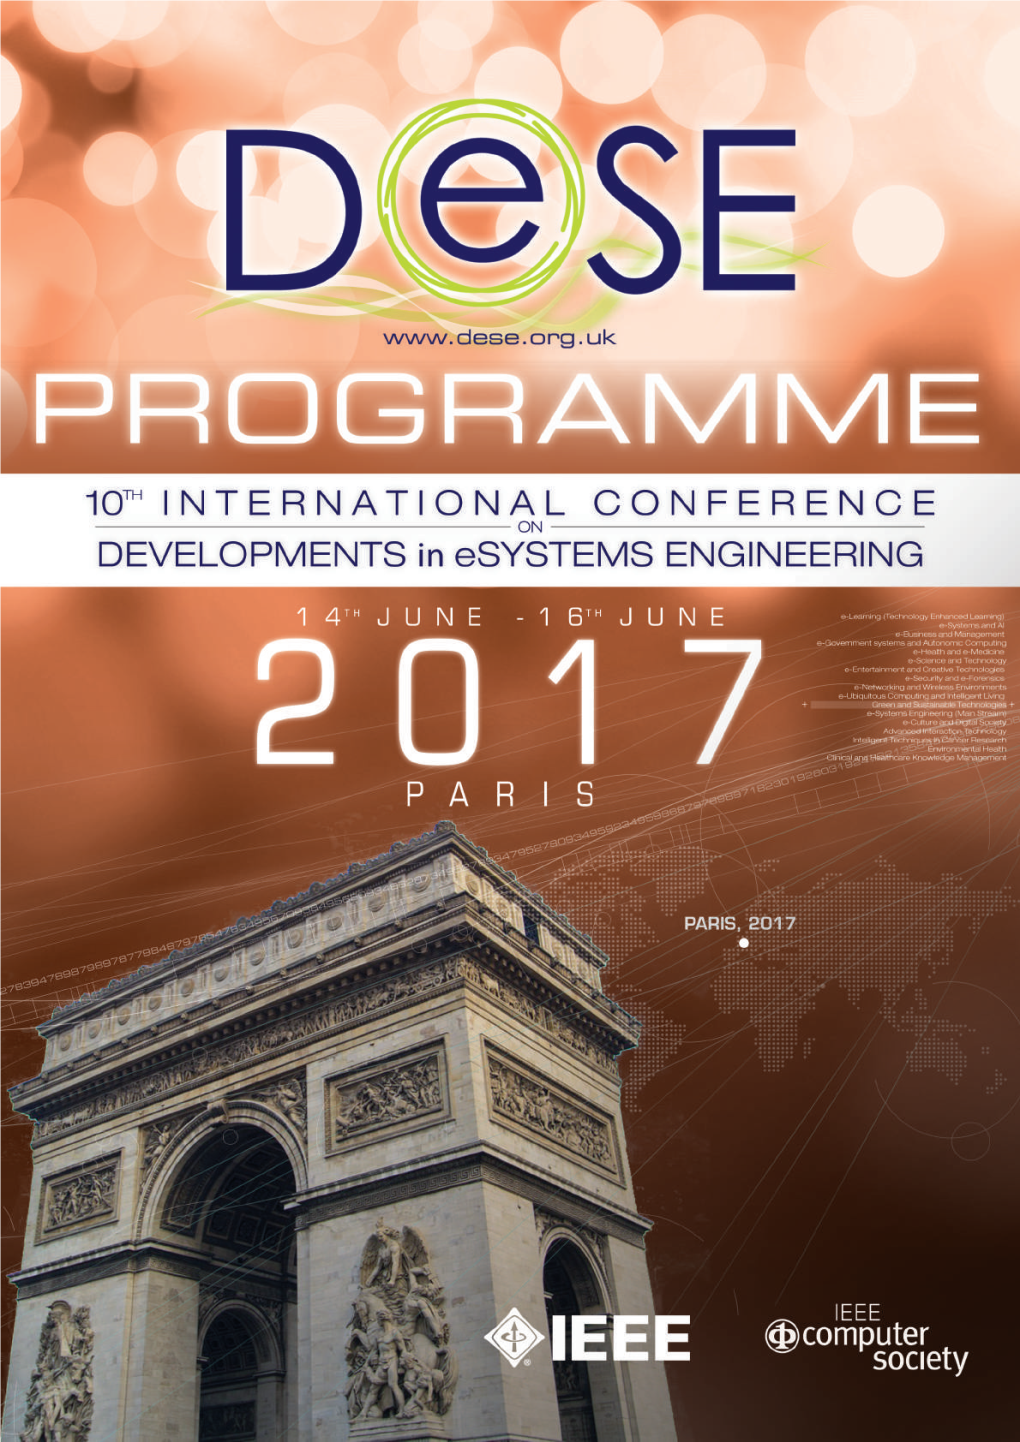 Dese 2017 Full Programme